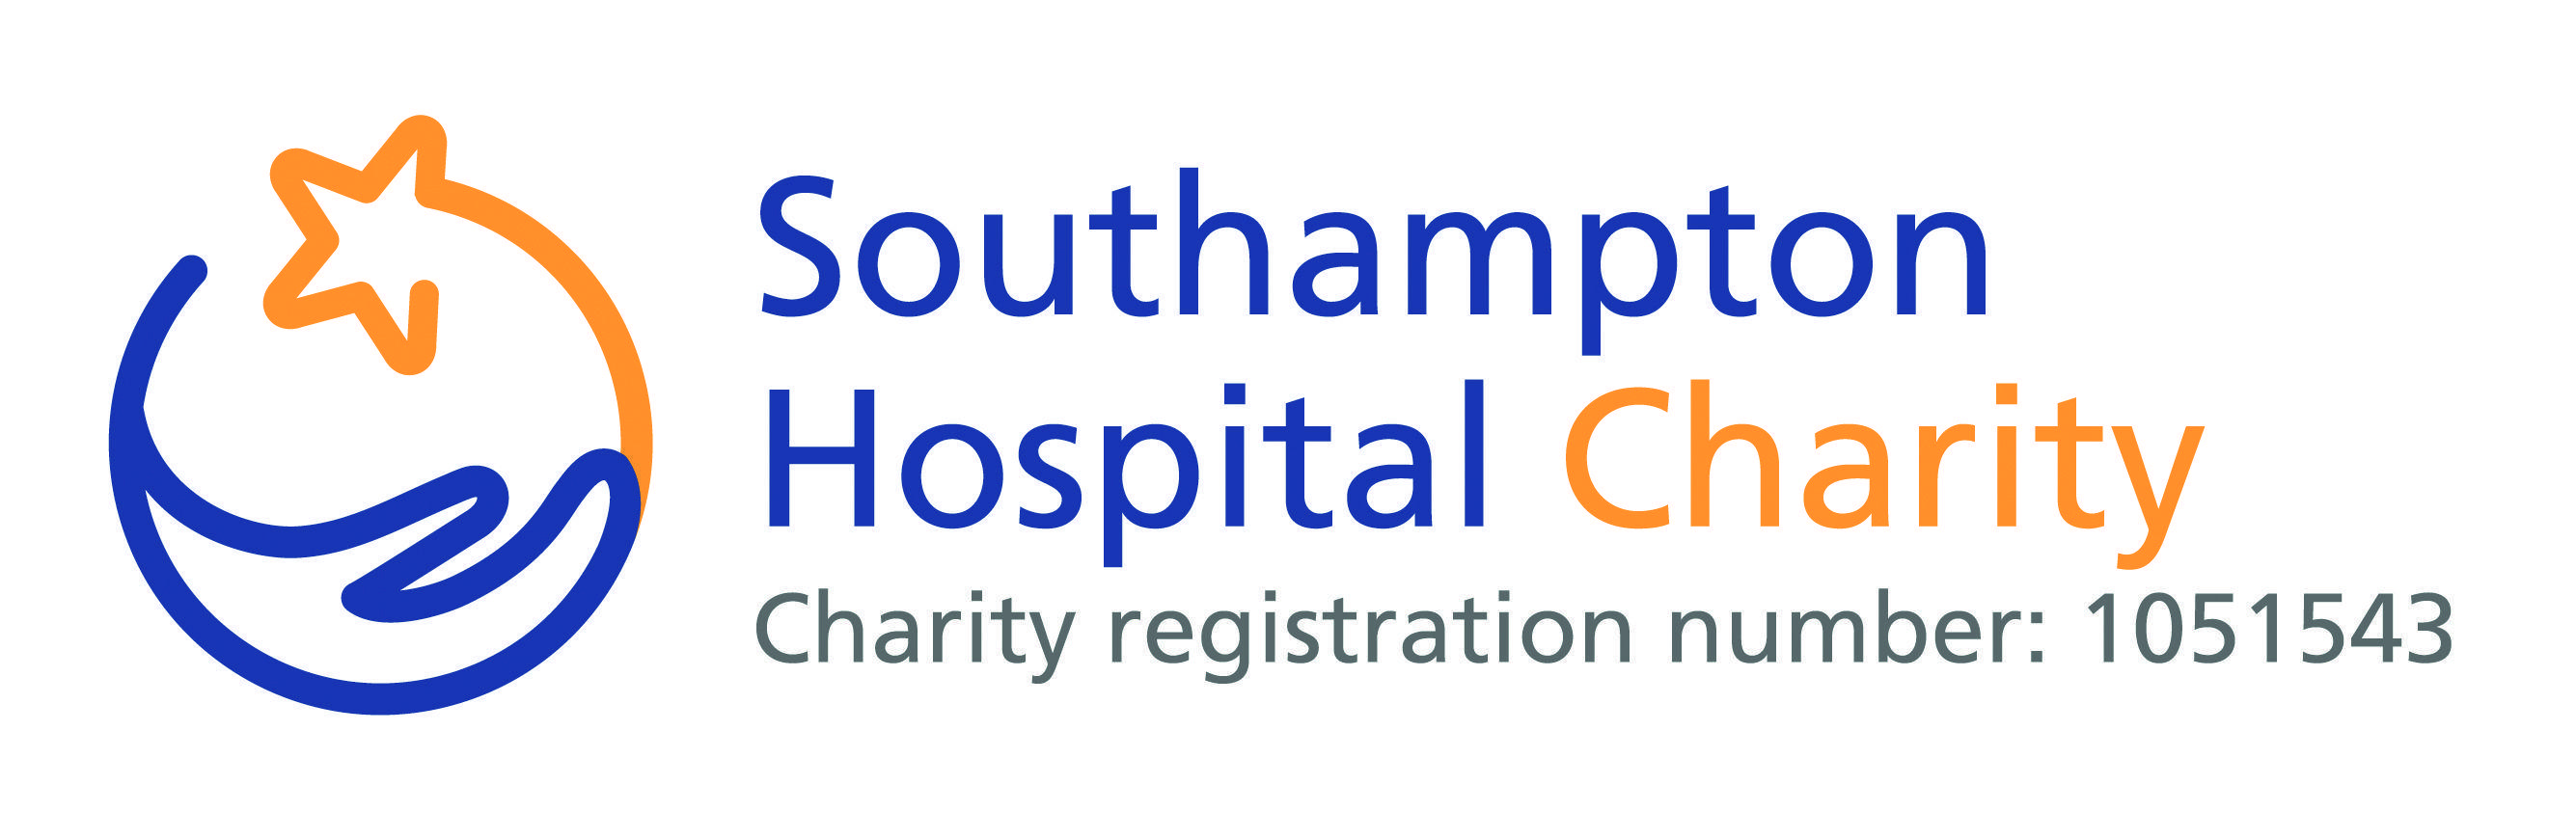 Fundraising Logo - Southampton Hospital Charity